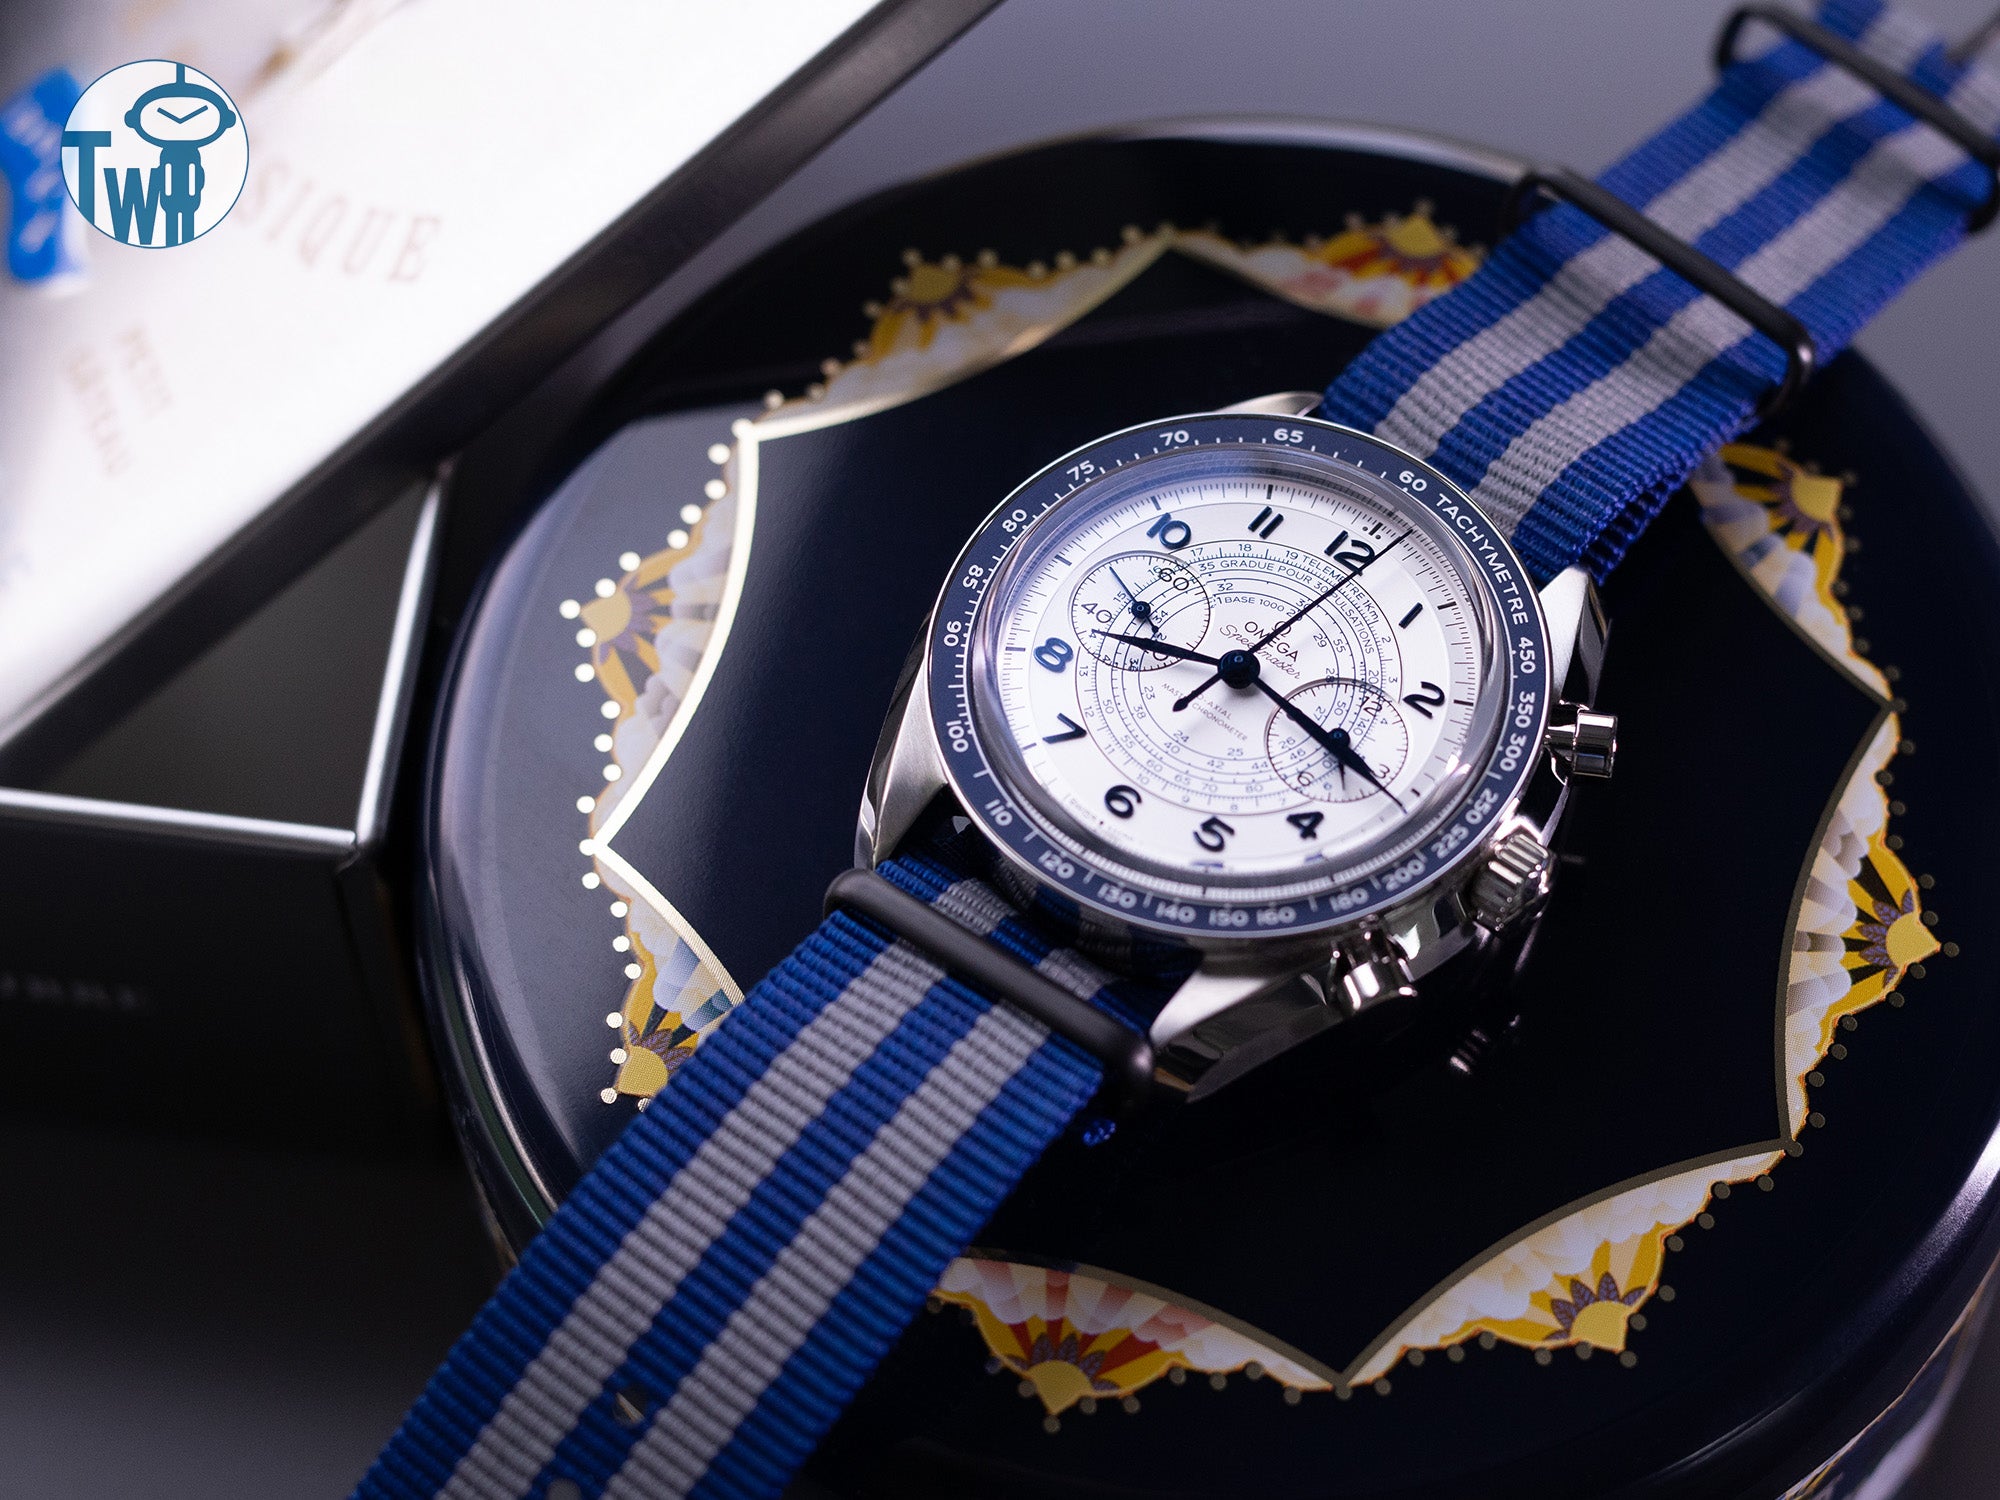 當Omega歐米茄Speedmaster超霸系列 Chronoscope計時碼錶搭配罕見的21mm MiLTAT G10軍用海軍藍和灰色尼龍錶帶時，展現出一種休閒優雅的絕佳範例。